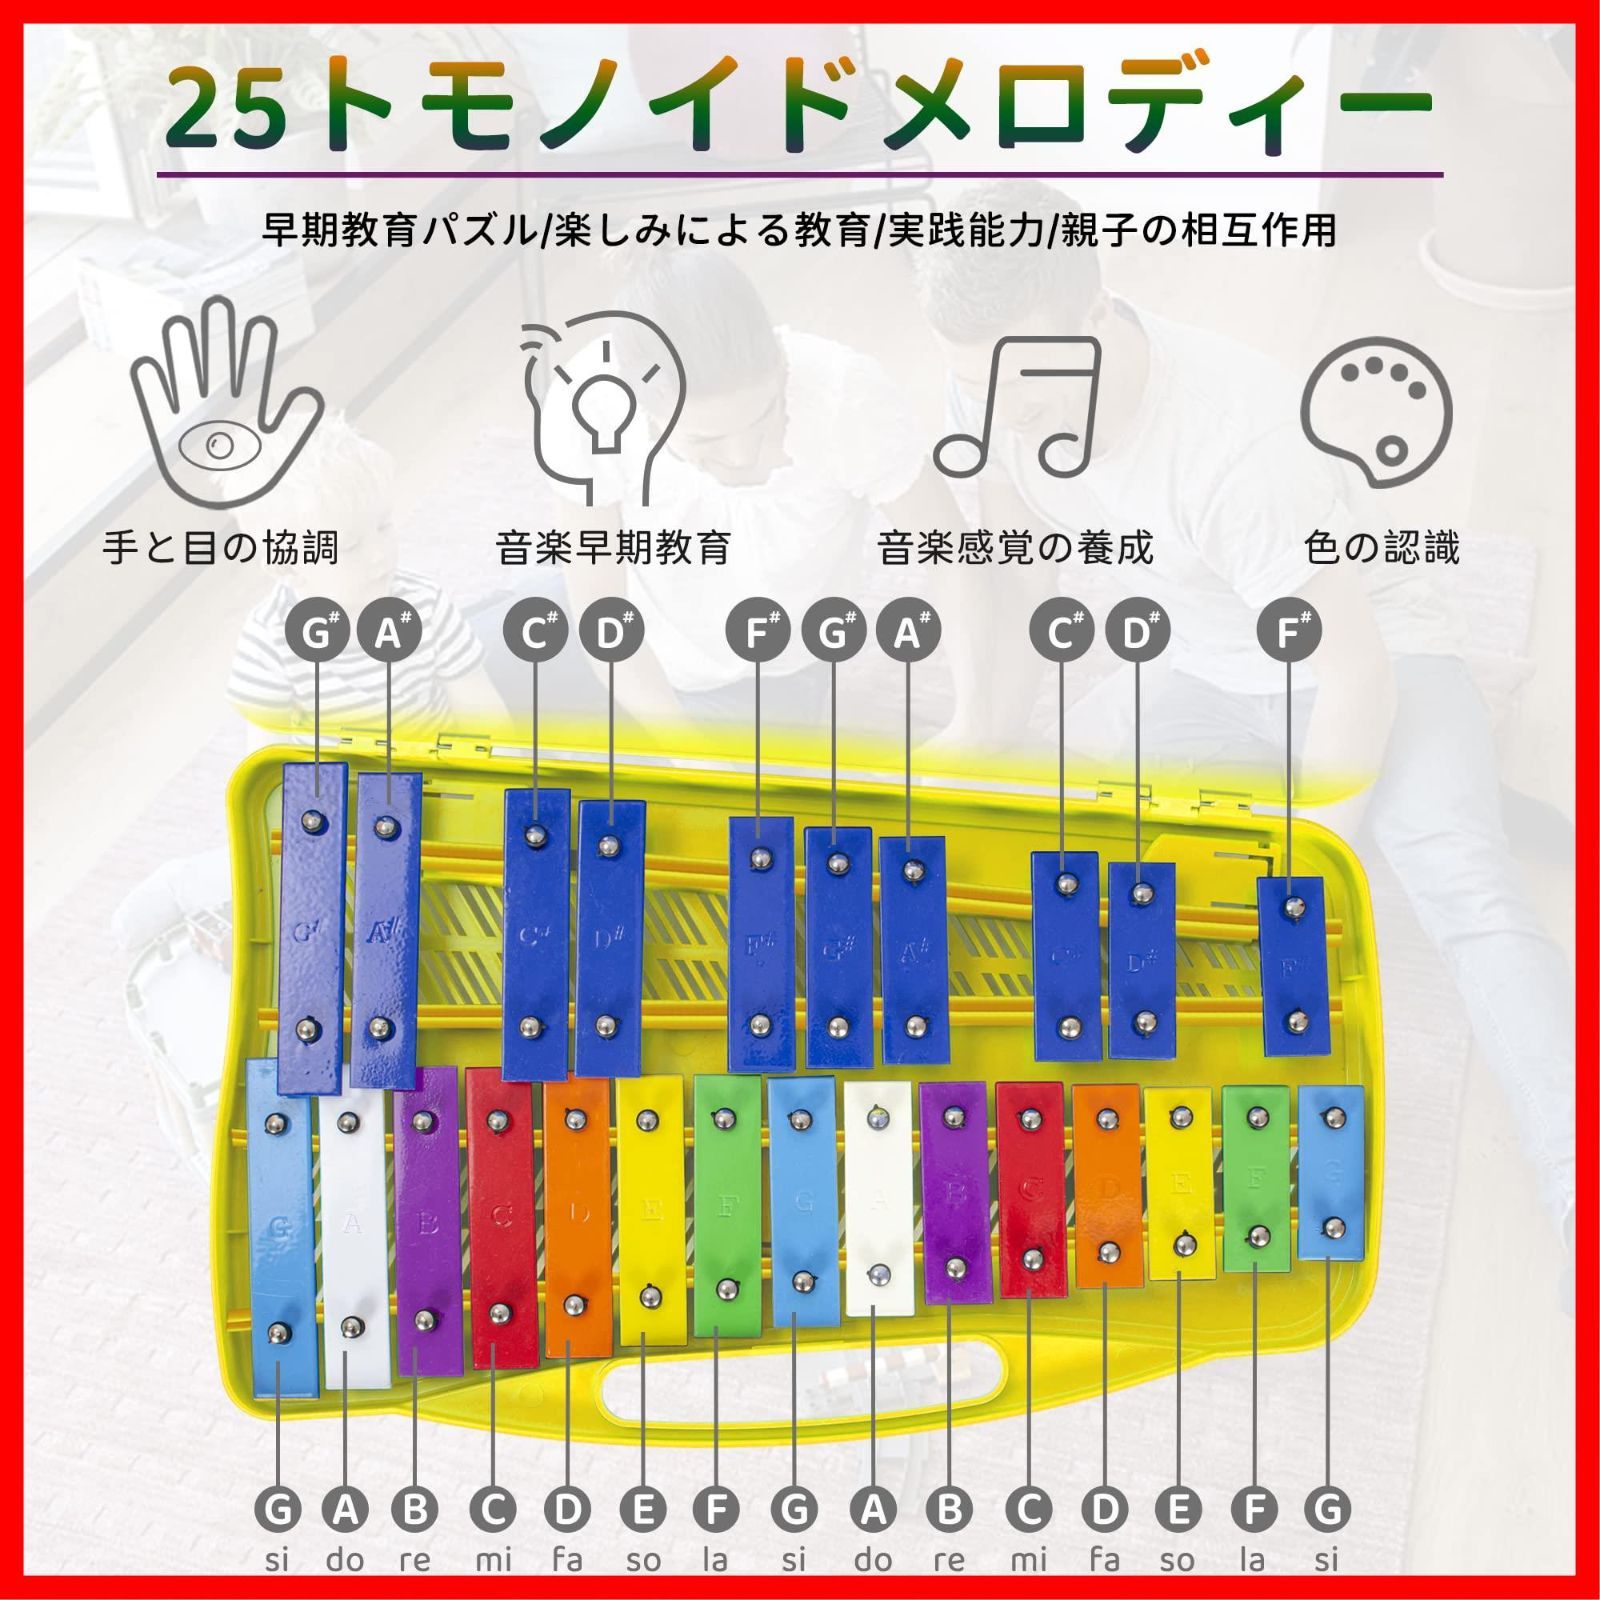 BQKOZFIN 鉄琴 カラフル 25音 オルフ楽器 卓上鉄琴 パーカッション 音楽ギフト 音楽教育ツールミュージカル教材 2マレット付き (イエロー)